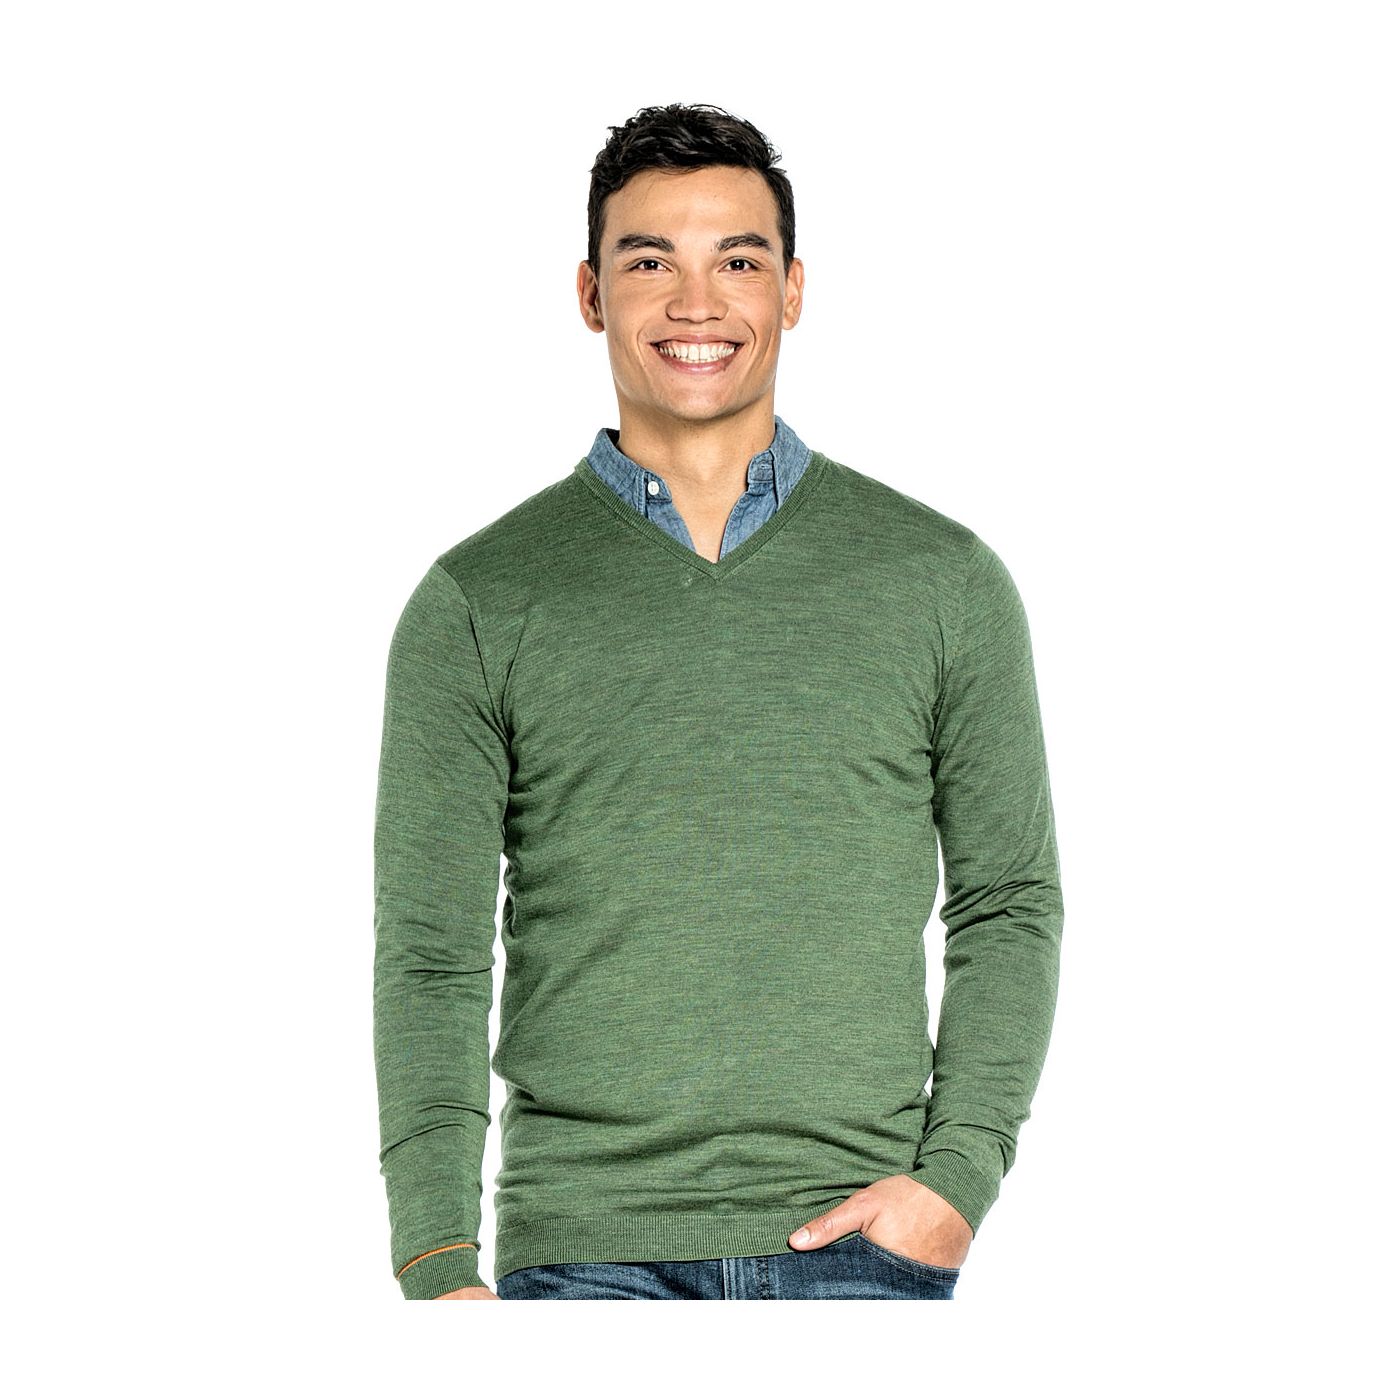 V hals trui voor mannen gemaakt van merinowol in het Groen